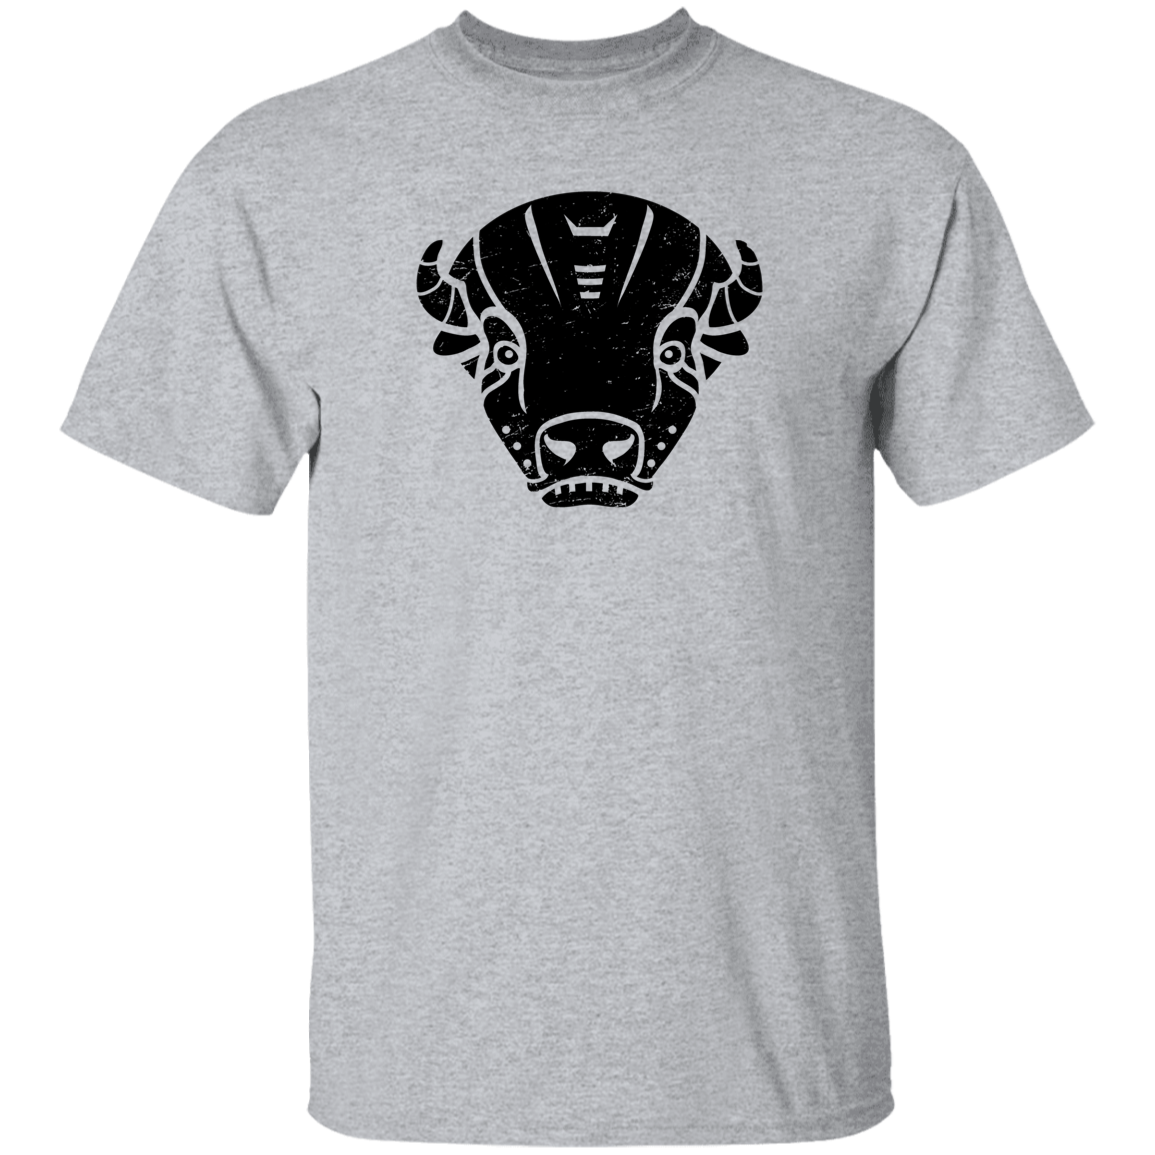 Black Distressed Emblem T-Shirt for Kids (Bison/Panzer)